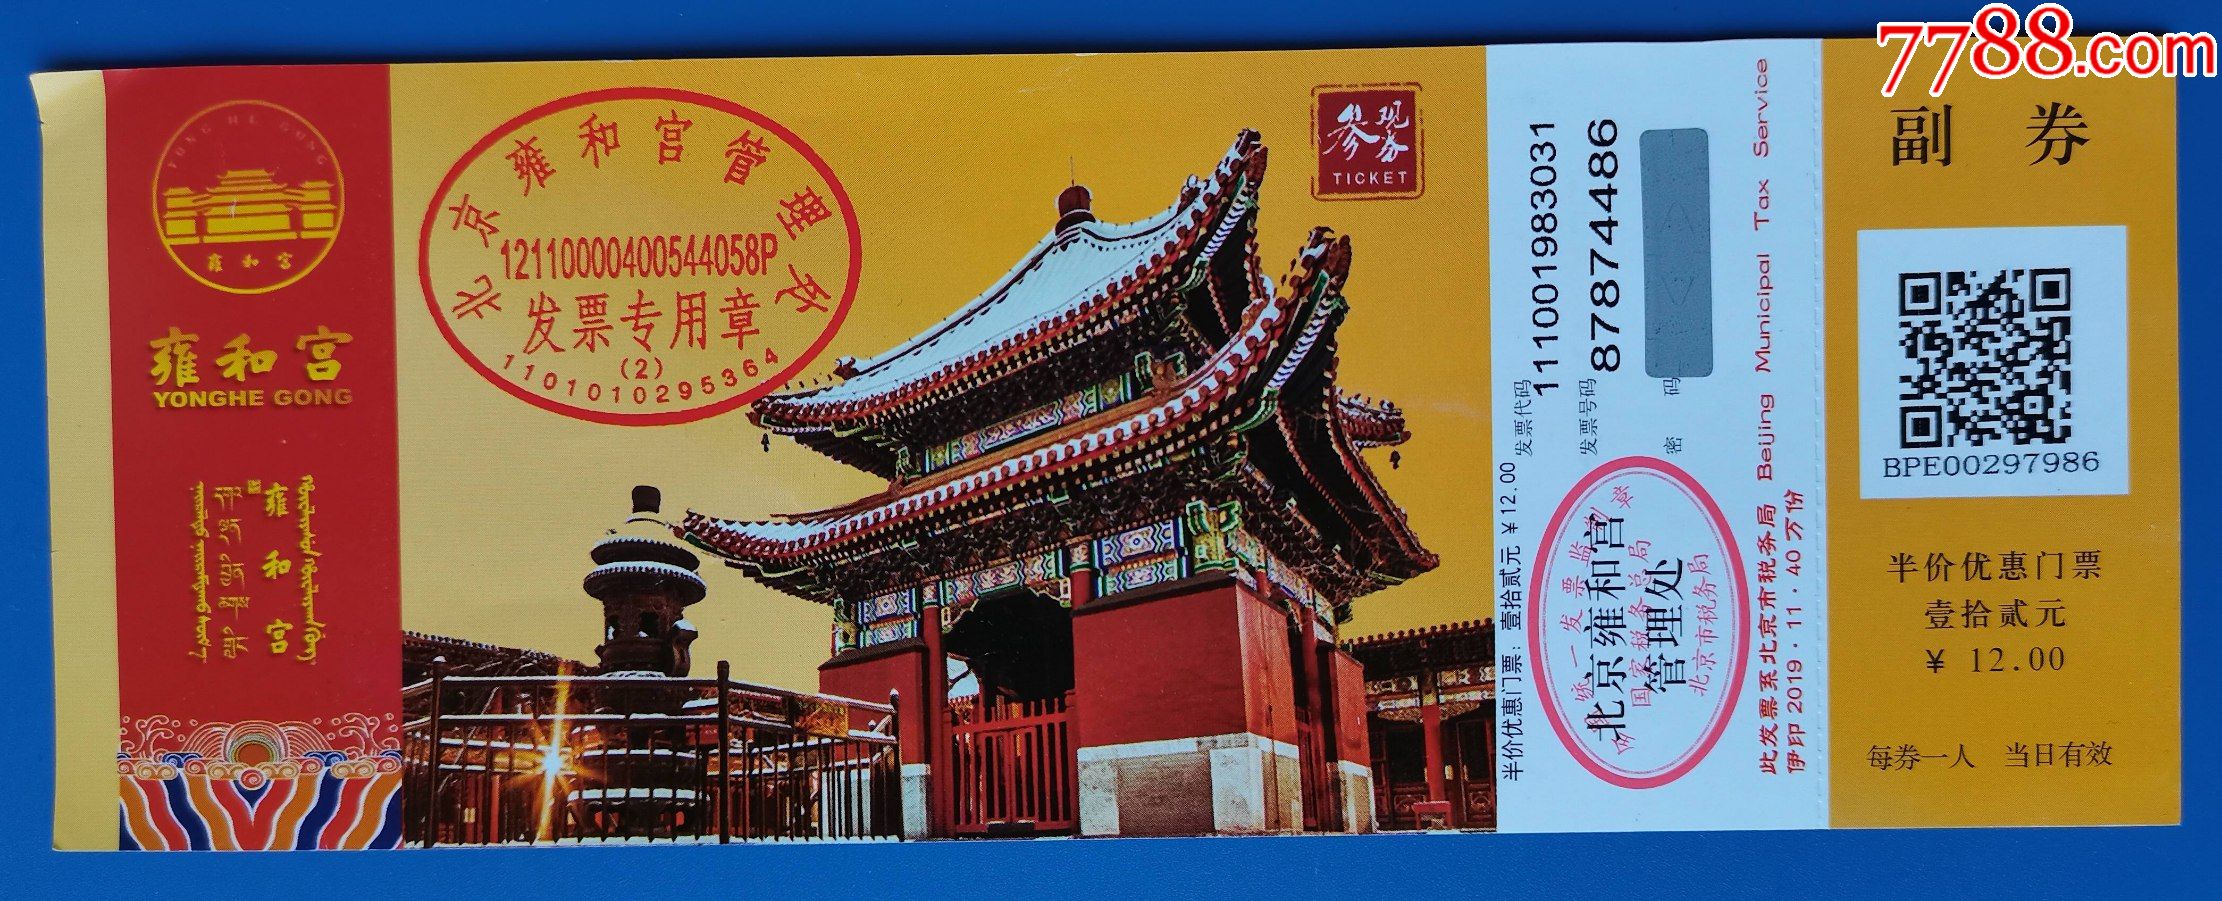 北京雍和宫门票